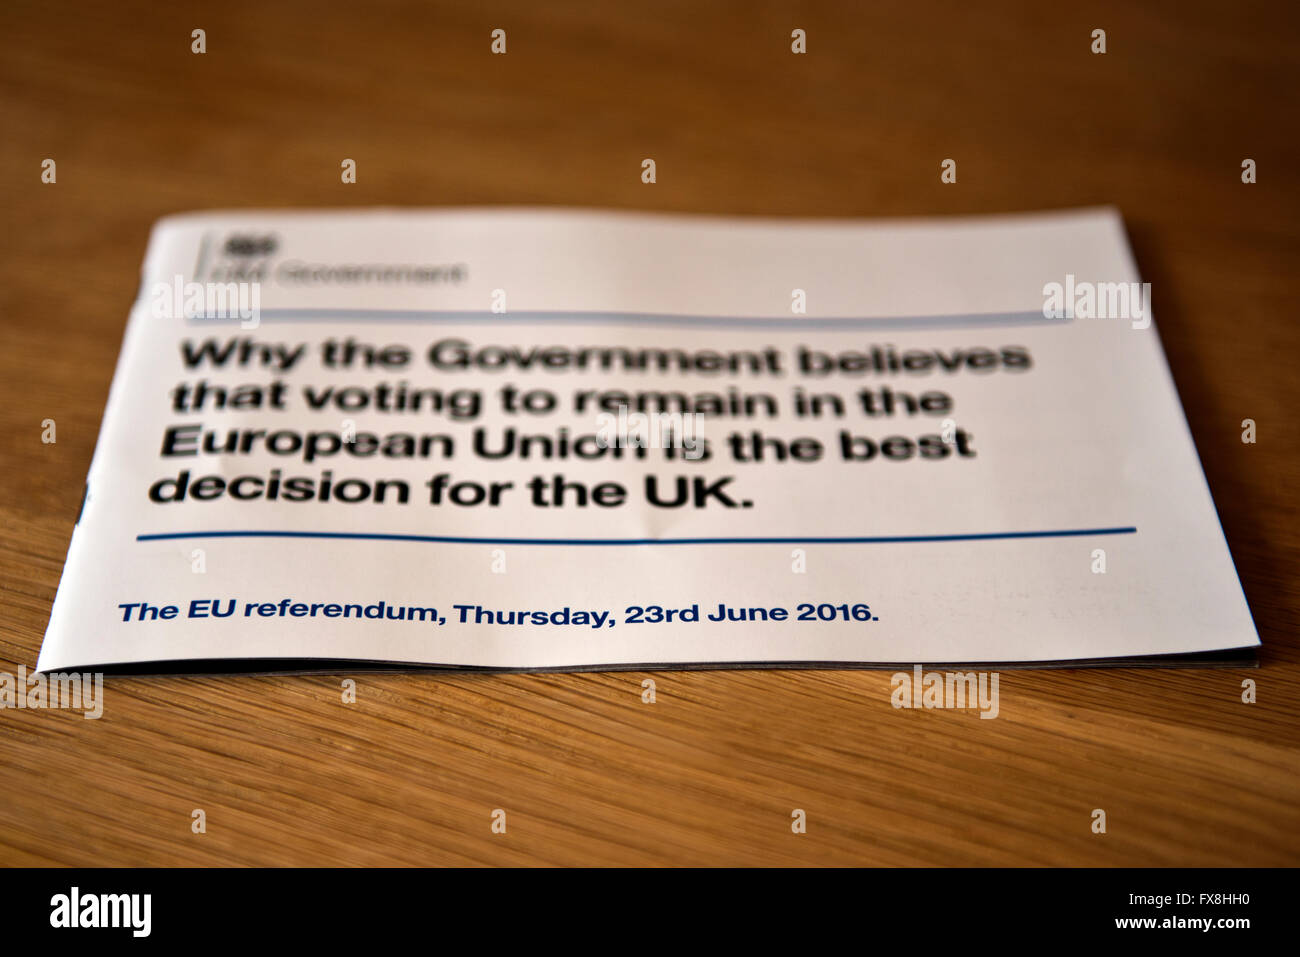 Die umstrittene Broschüre herausgegeben durch die Regierung die Steuerzahler Geld verwendet, um die UK-Öffentlichkeit, stimmen in der EU bleiben davon zu überzeugen. Stockfoto